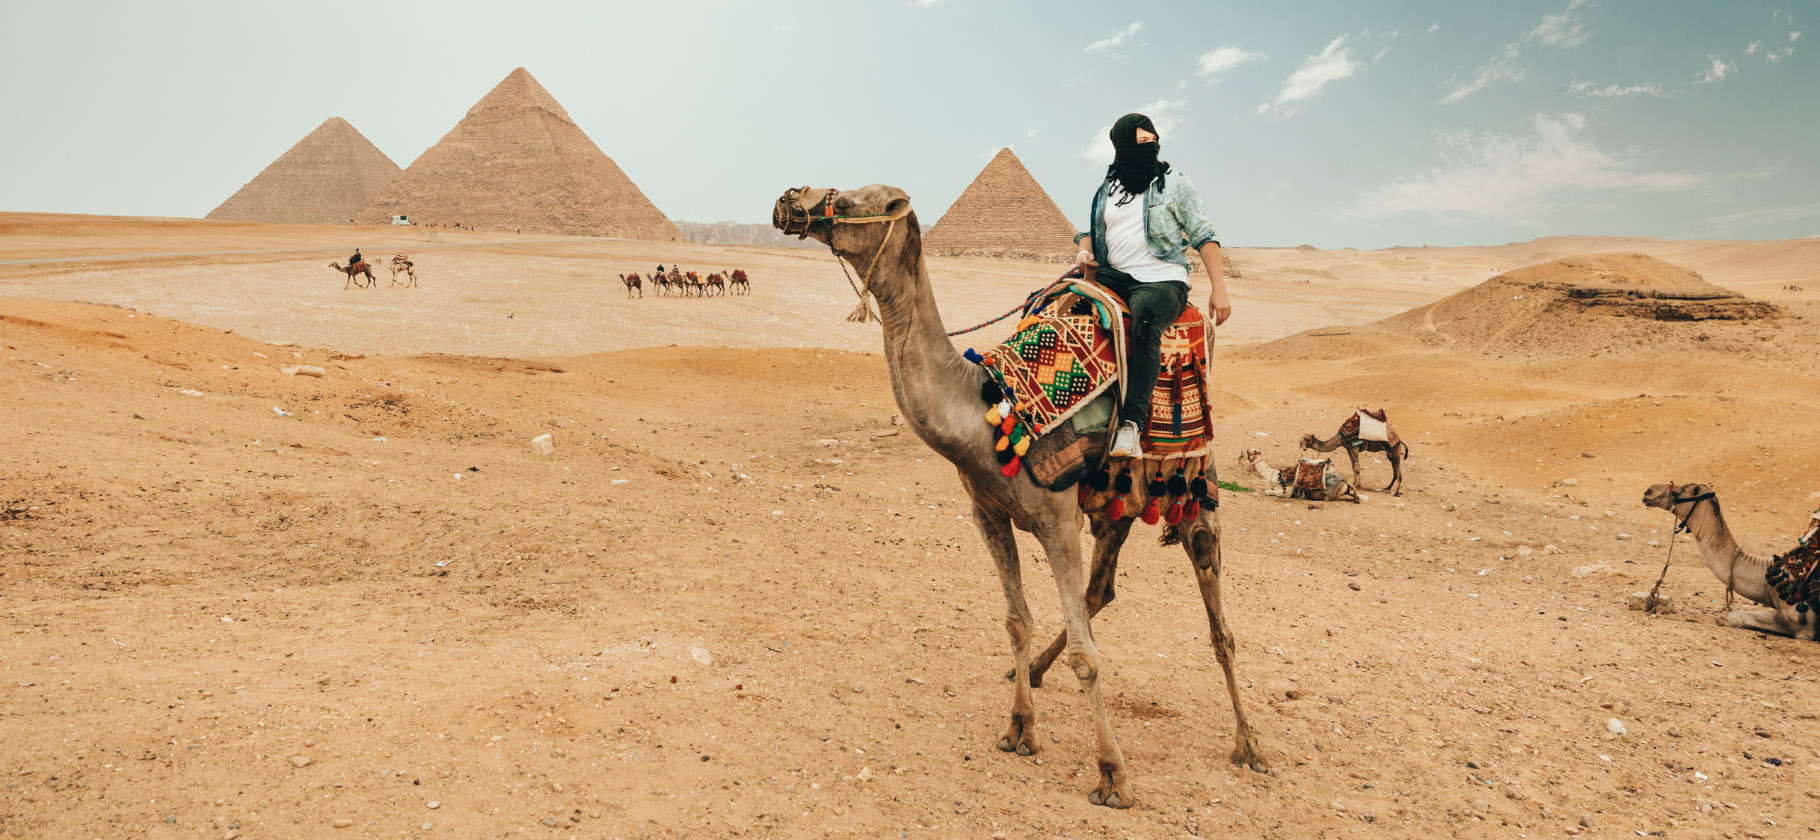 Обман туристов и запрет на фото: чем меня разочаровал Египет